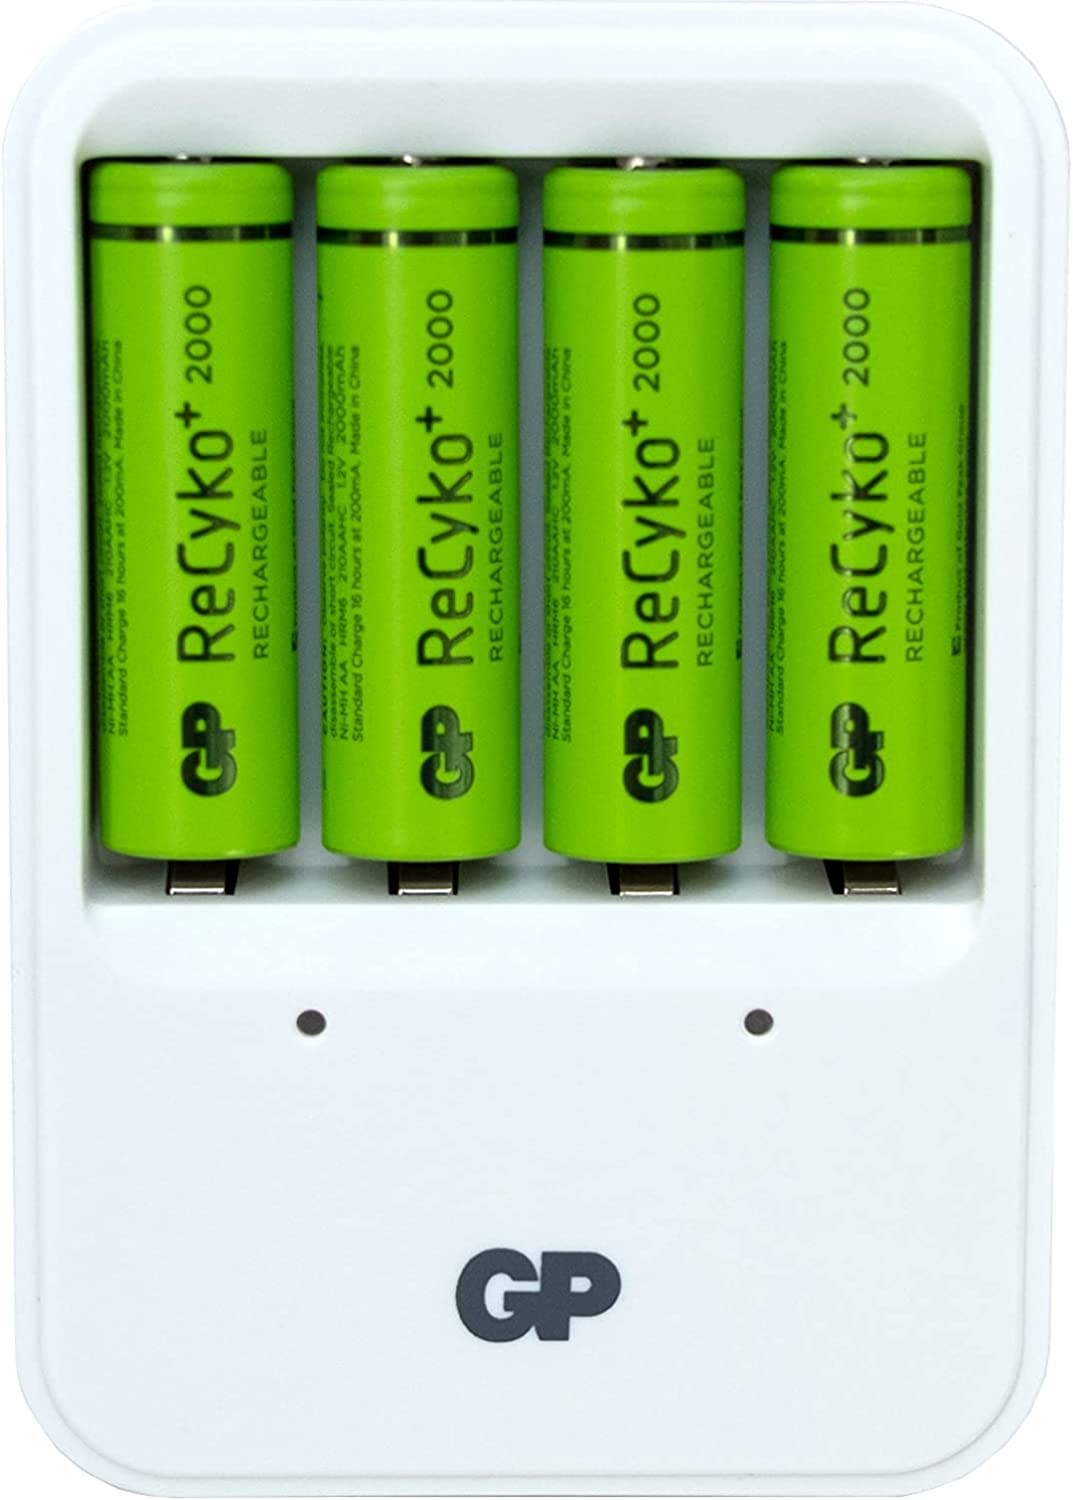 Gp - Chargeur pour Piles Rechargeables avec 4 Piles AA 2000 NiMH